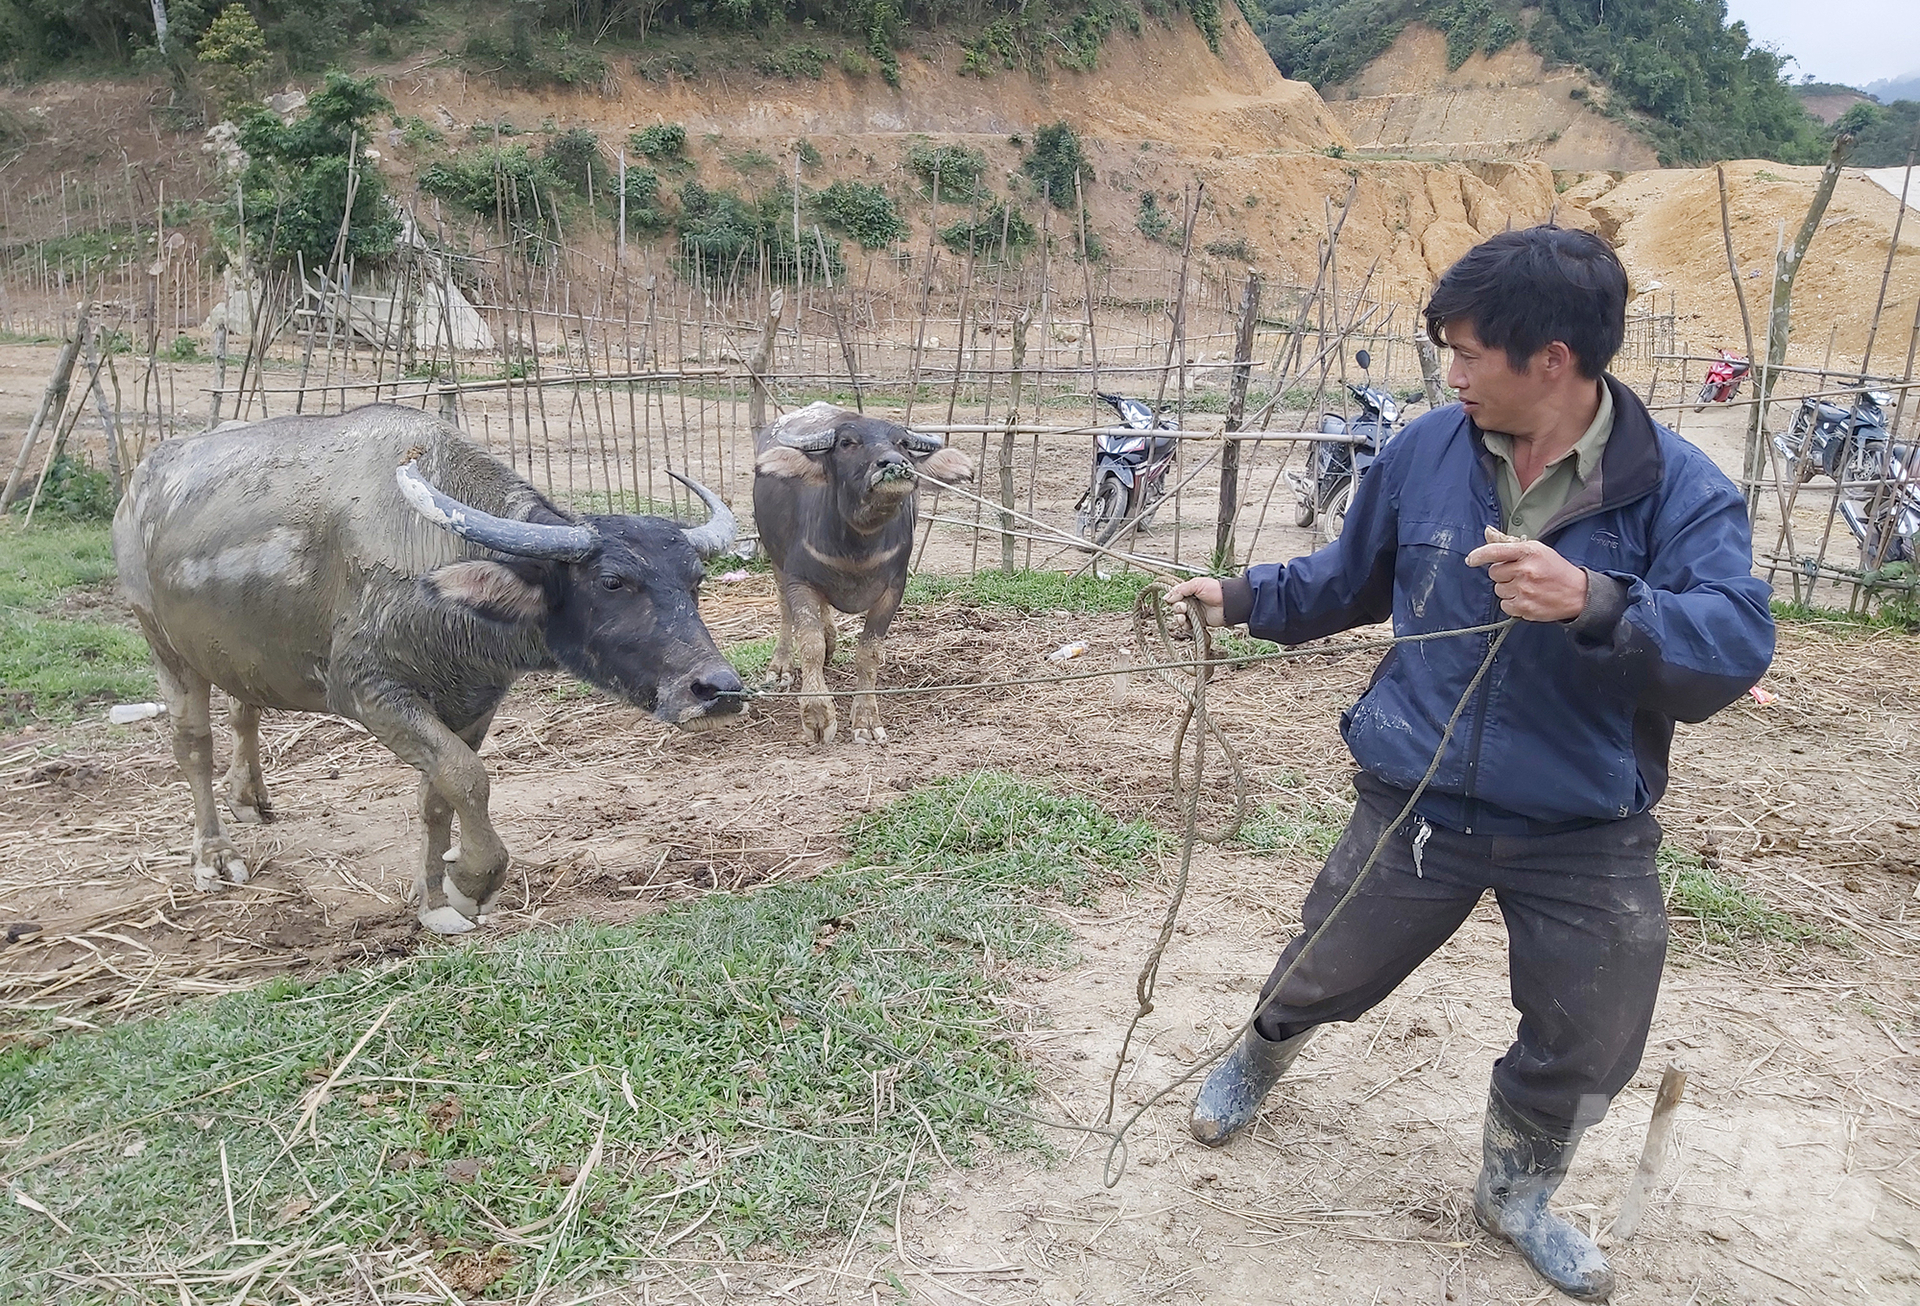 Tỷ lệ chăn nuôi nông hộ trên địa bàn Nghệ An còn rất lớn, đòi hỏi phải có cán bộ thú y tại các xã để kịp thời nắm bắt diễn biến dịch bệnh sớm, từ đó tham mưu phương án kịp thời. Ảnh: Việt Khánh.